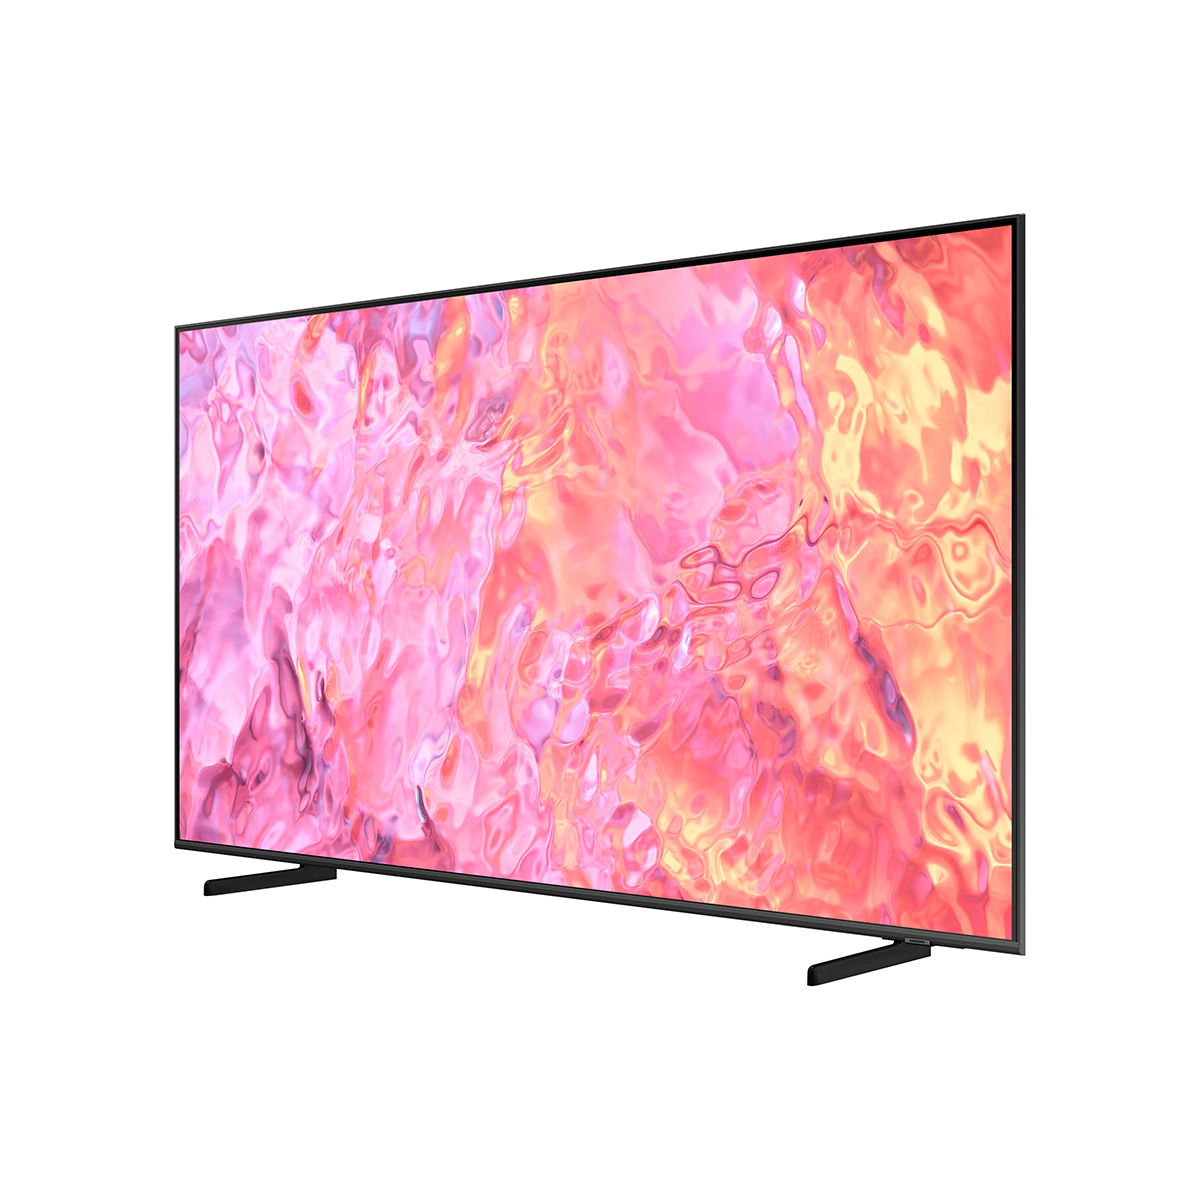 삼성 QLED TV KQ85QC68AFXKR 214cm (85)